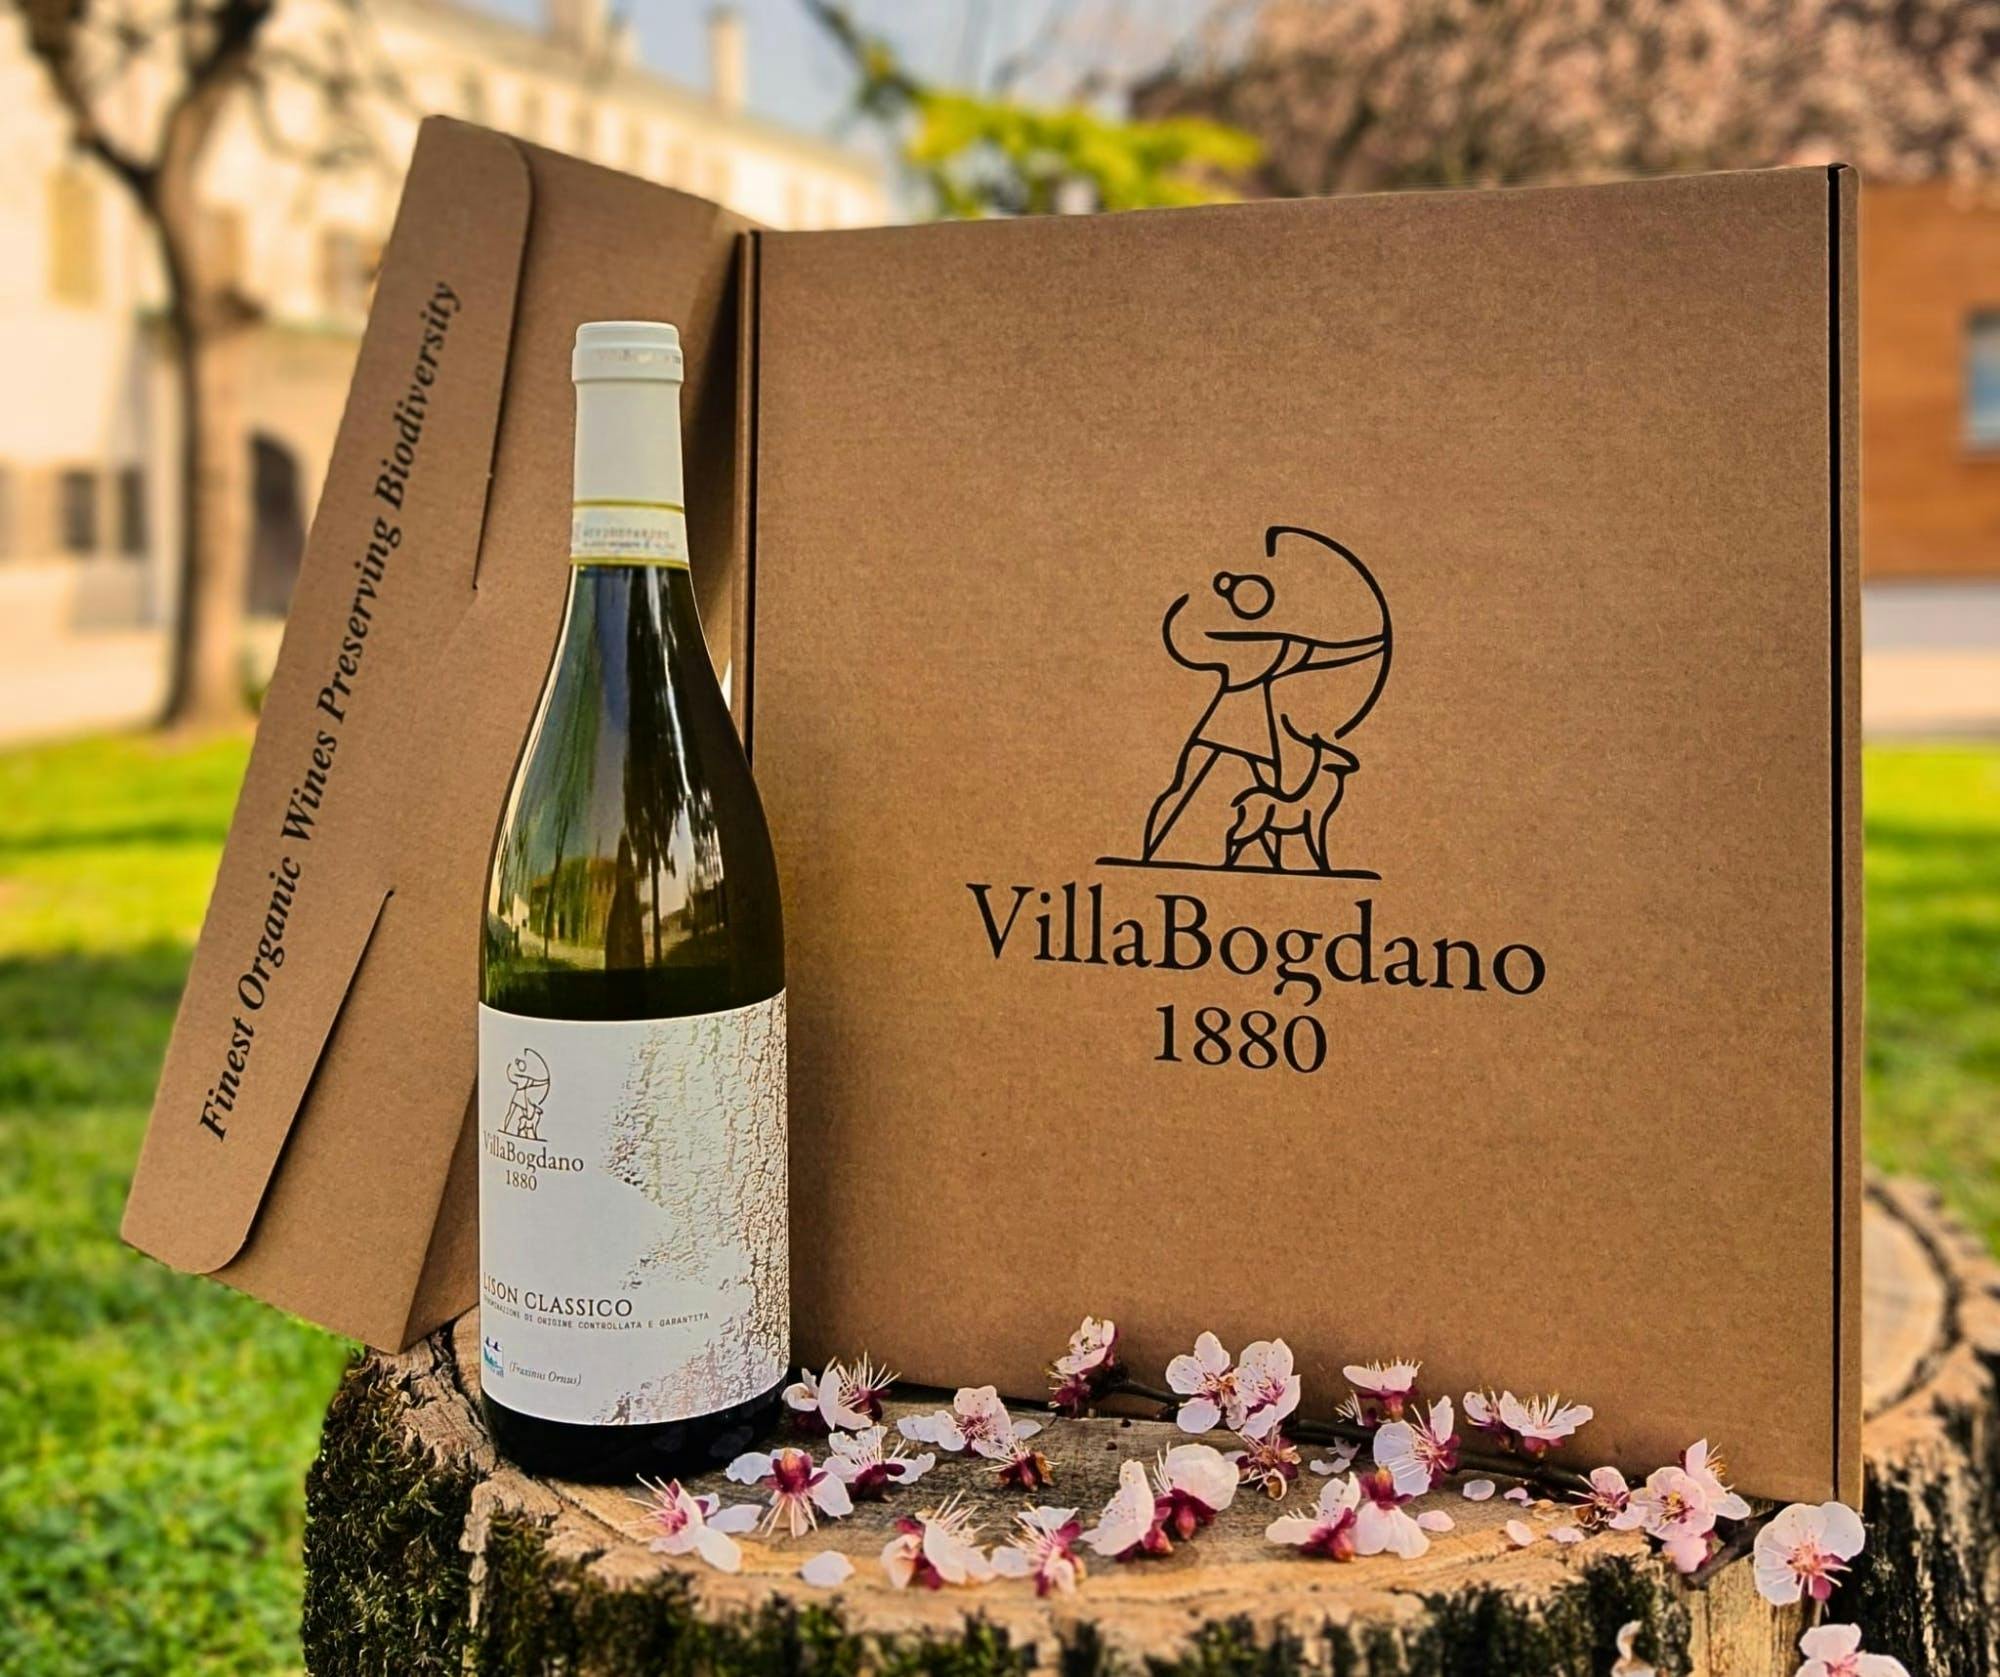 Geführter Rundgang durch die Weinberge der Villa Bogdano 1880 mit Weinprobe